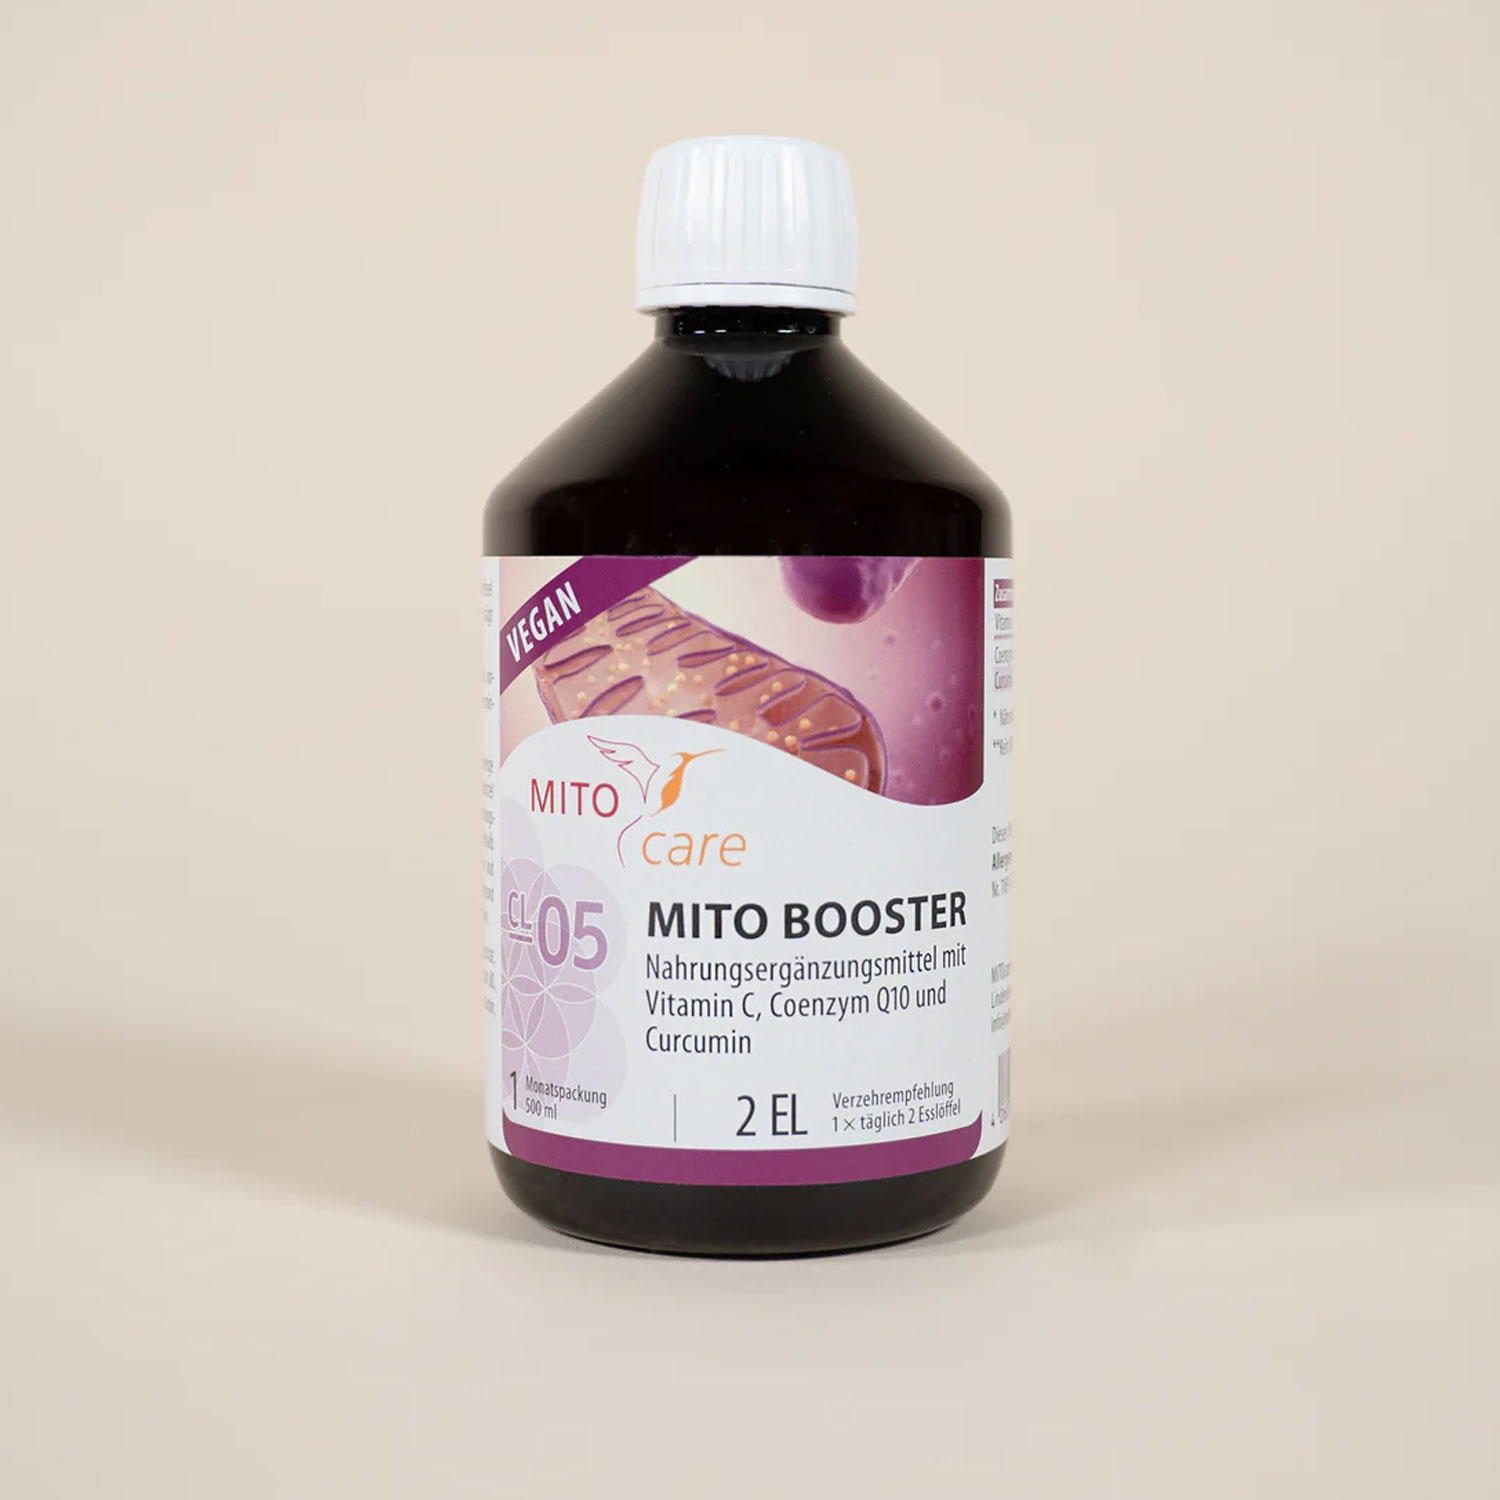 Mito Booster von MITOCare - Dose Etikett vorn